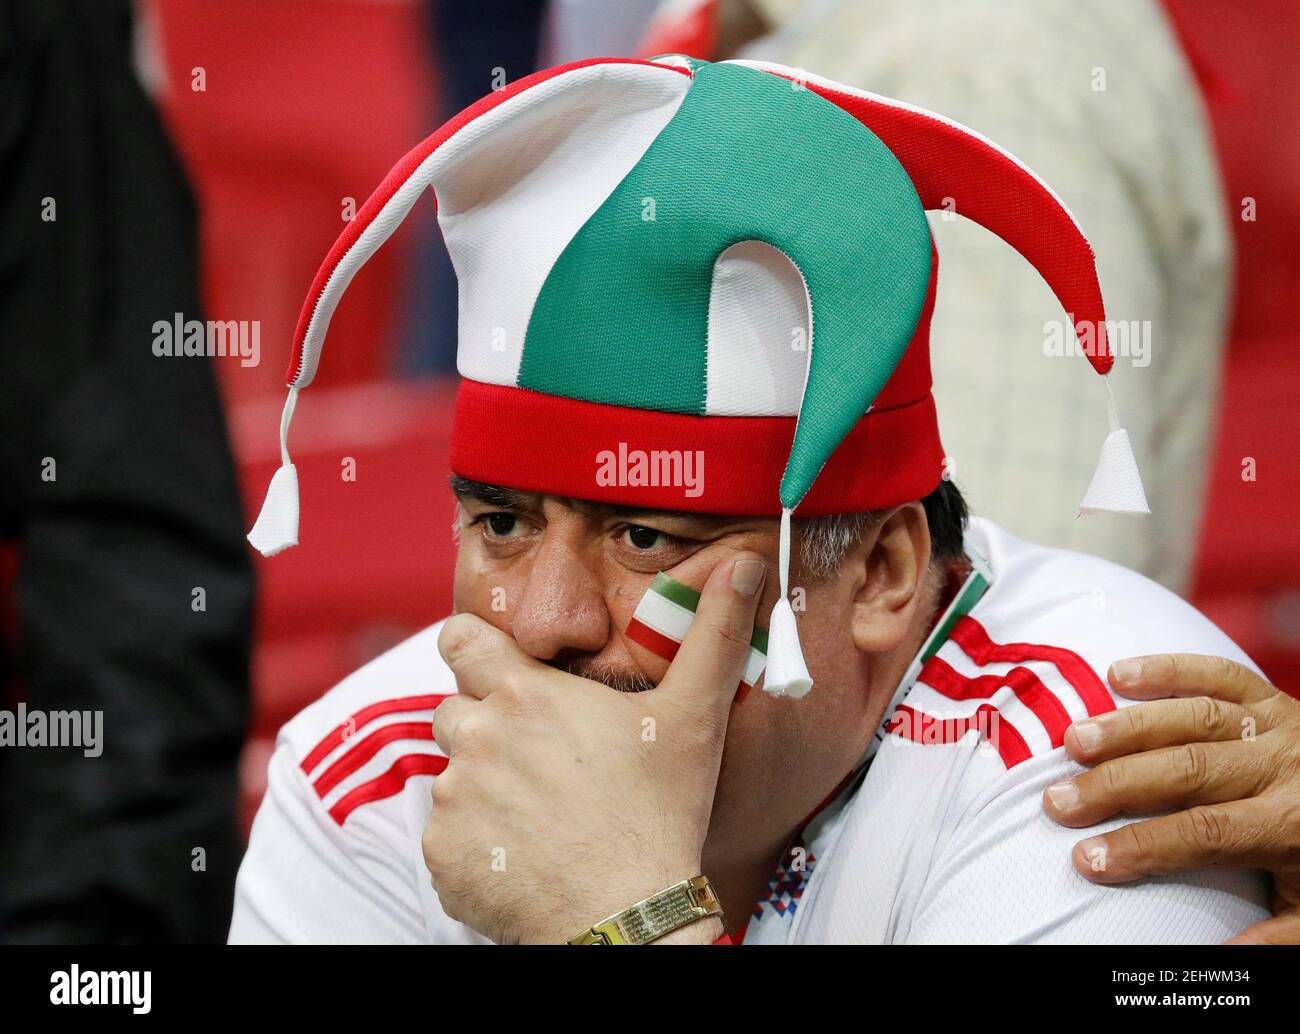 Football football - coupe du monde - Groupe B - Iran contre Espagne - Kazan Arena, Kazan, Russie - 20 juin 2018 les fans iraniens semblent découragés après le match REUTERS/Toru Hanai Banque D'Images